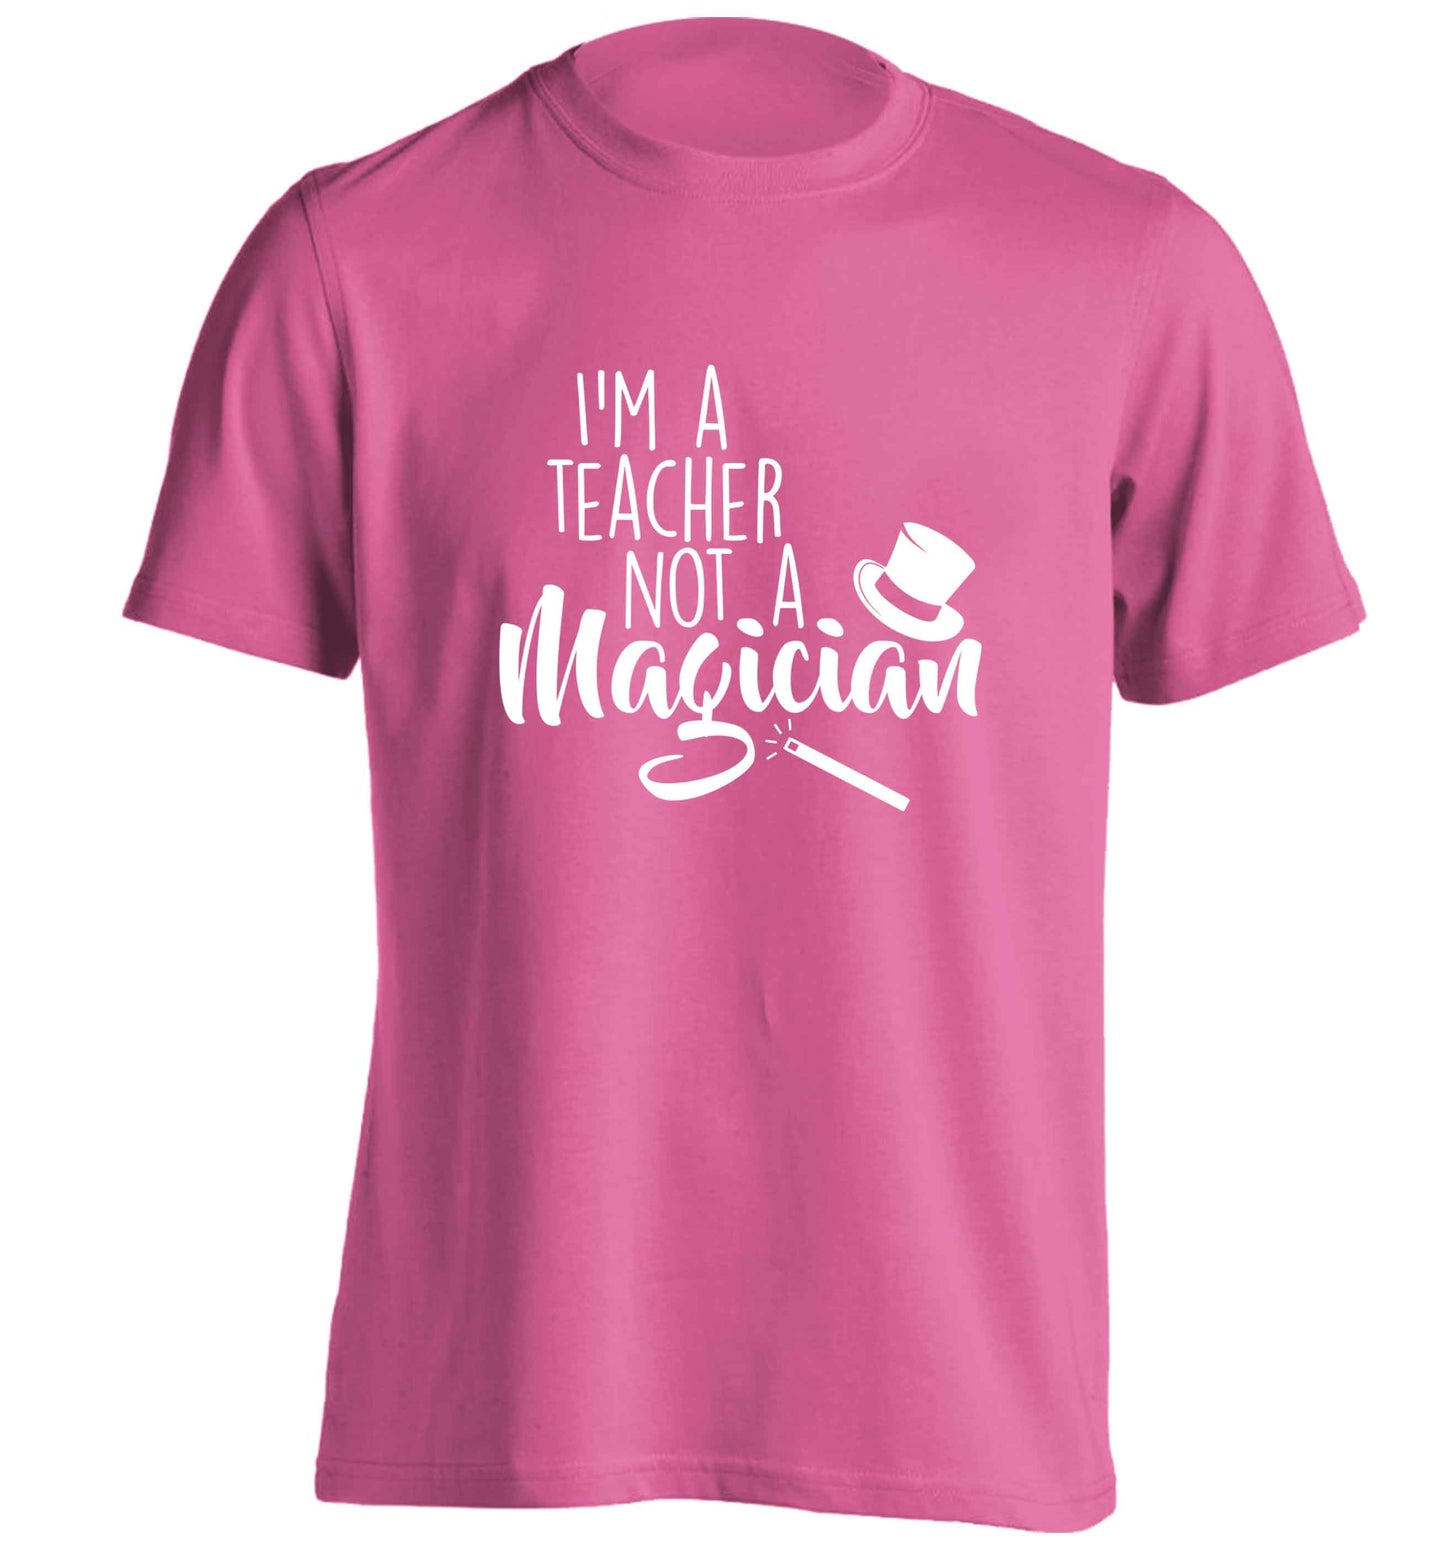 I'm a teacher not a magician adults unisex pink Tshirt 2XL